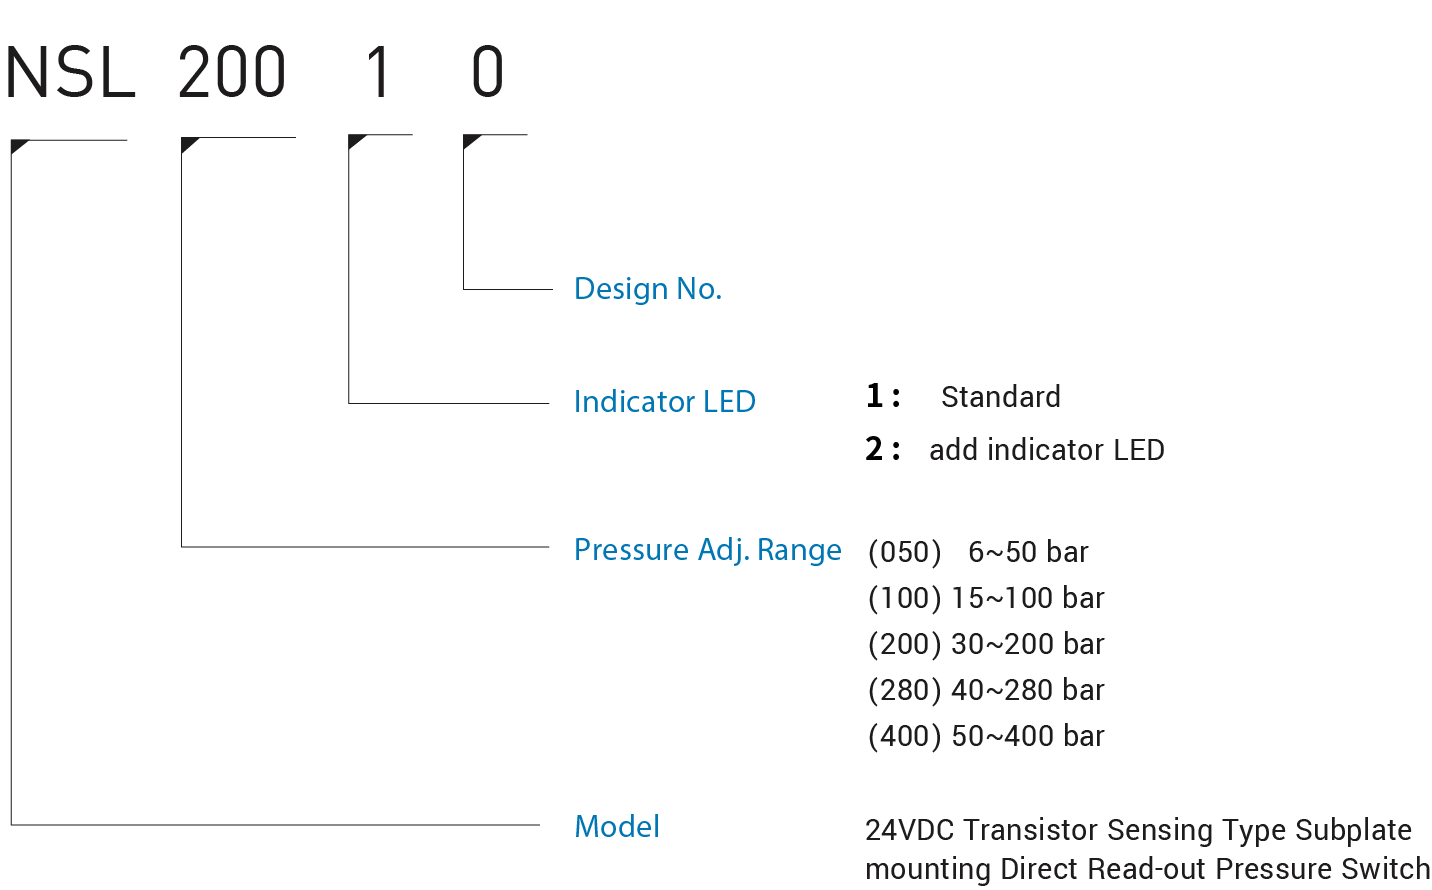 CML 4VDC Транзисторный датчик давления с прямым считыванием, установка на подплите, NSL Код модели